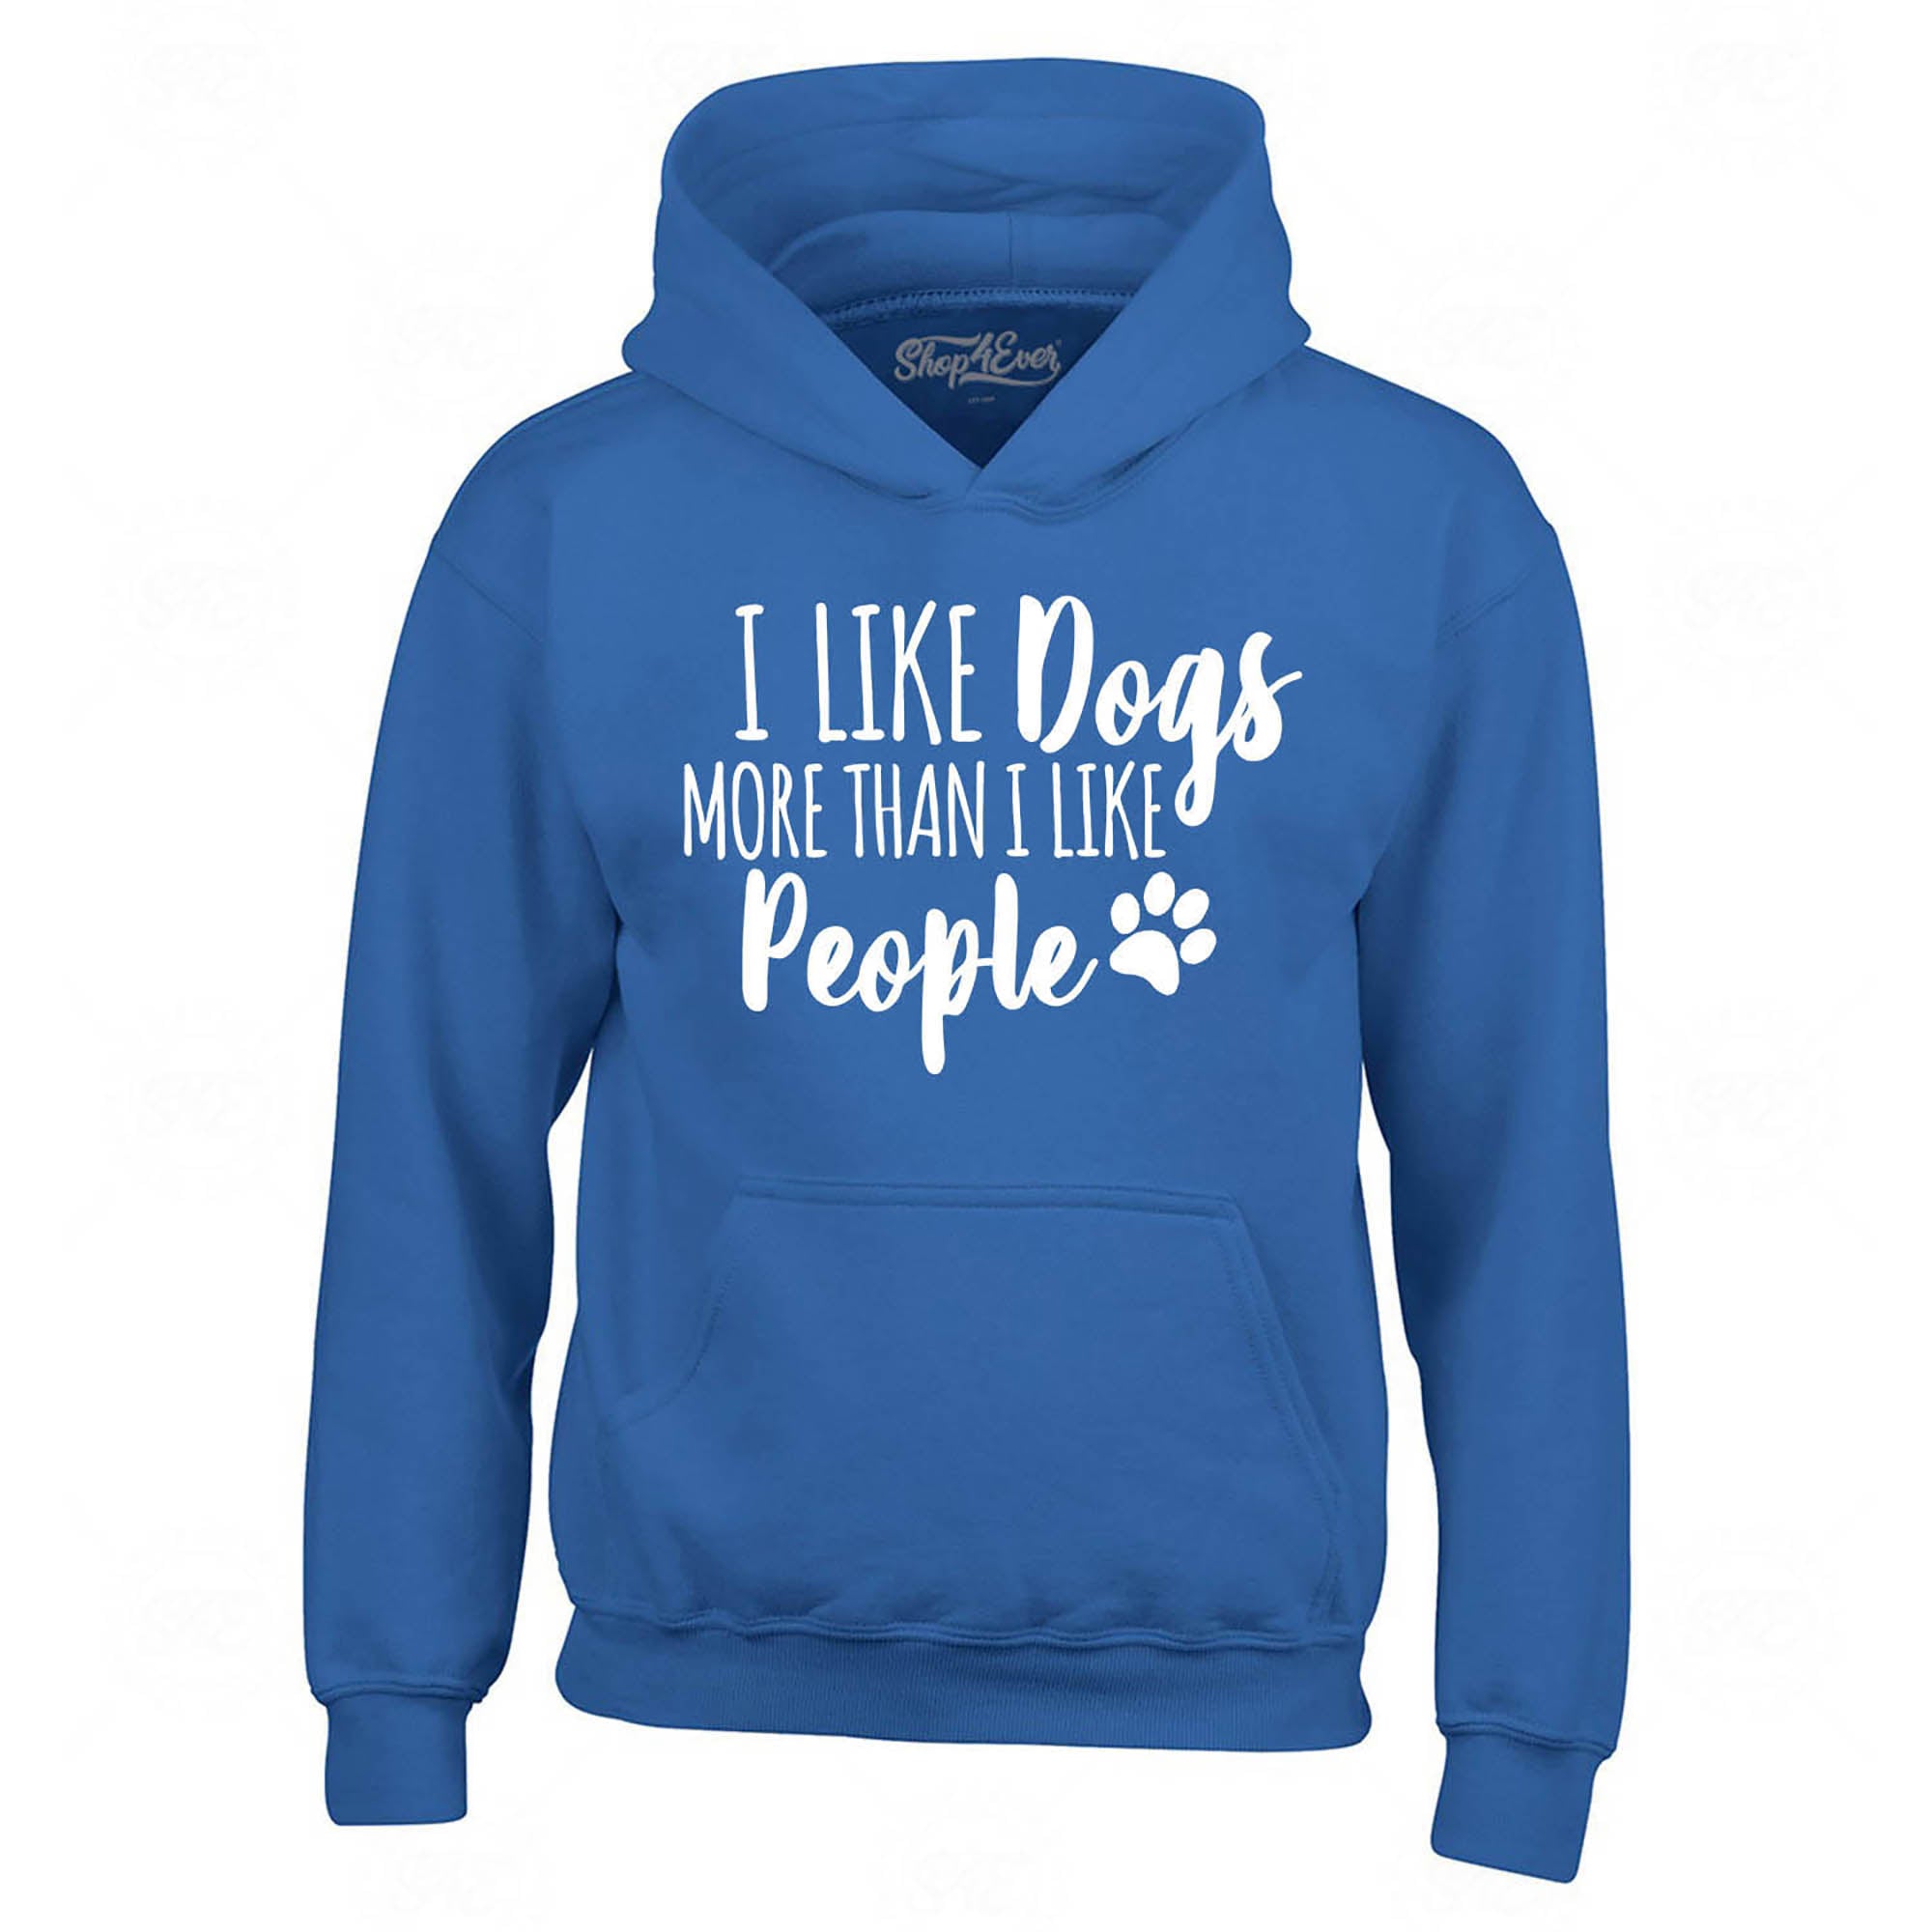 I Like Dogs More Than I Like People Hoodie Sweatshirts